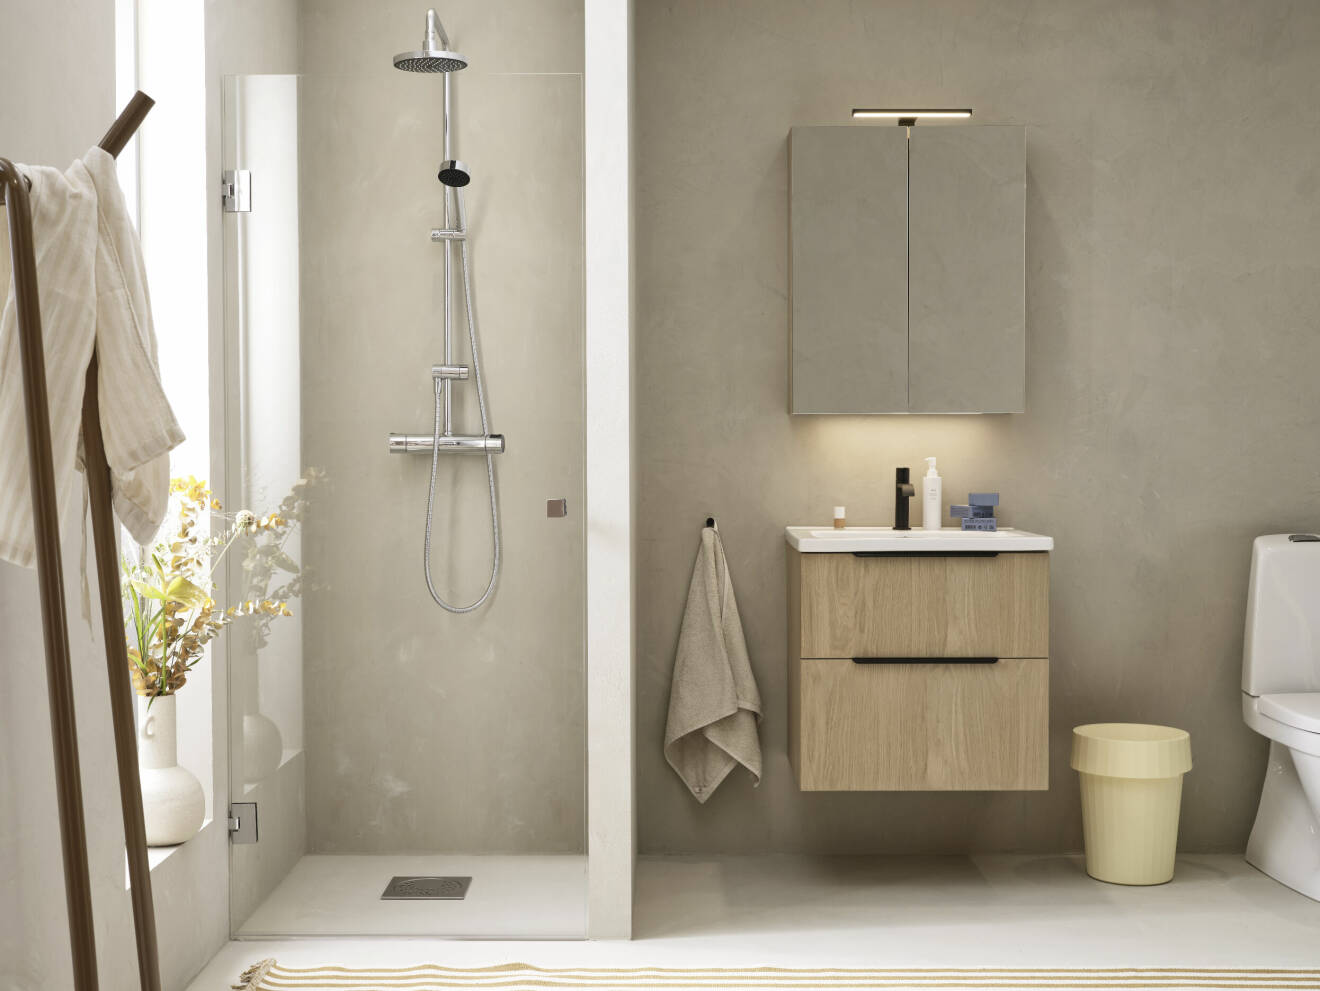 trendig badrumsinredning med vitpigmenterad ek från vedum